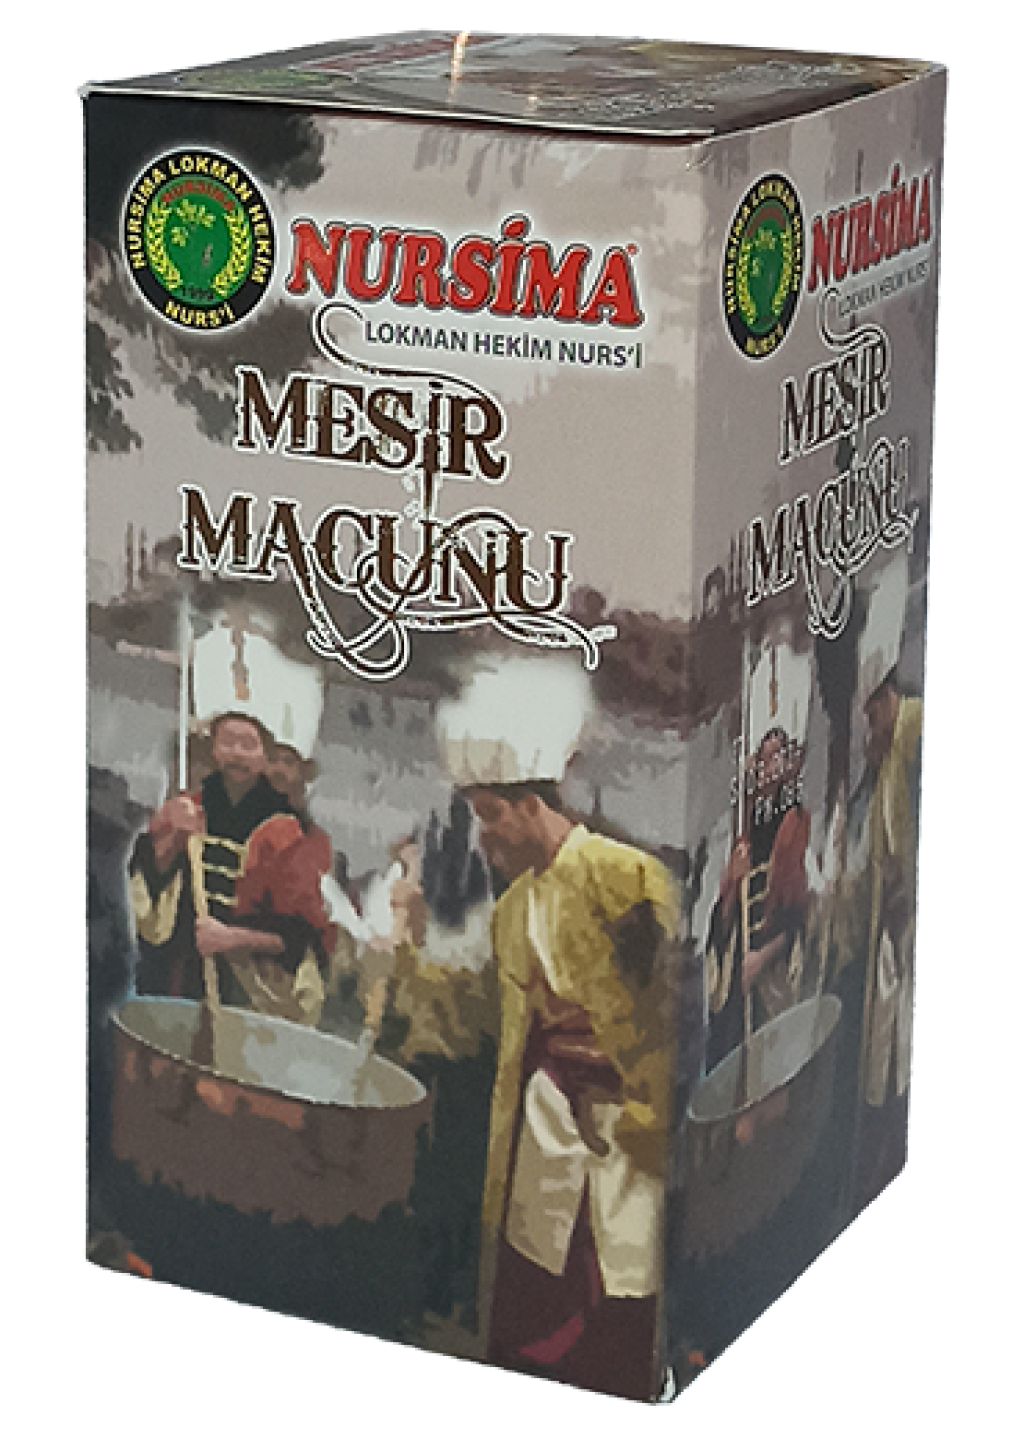 Nursima Mesir Macunu 420 gr